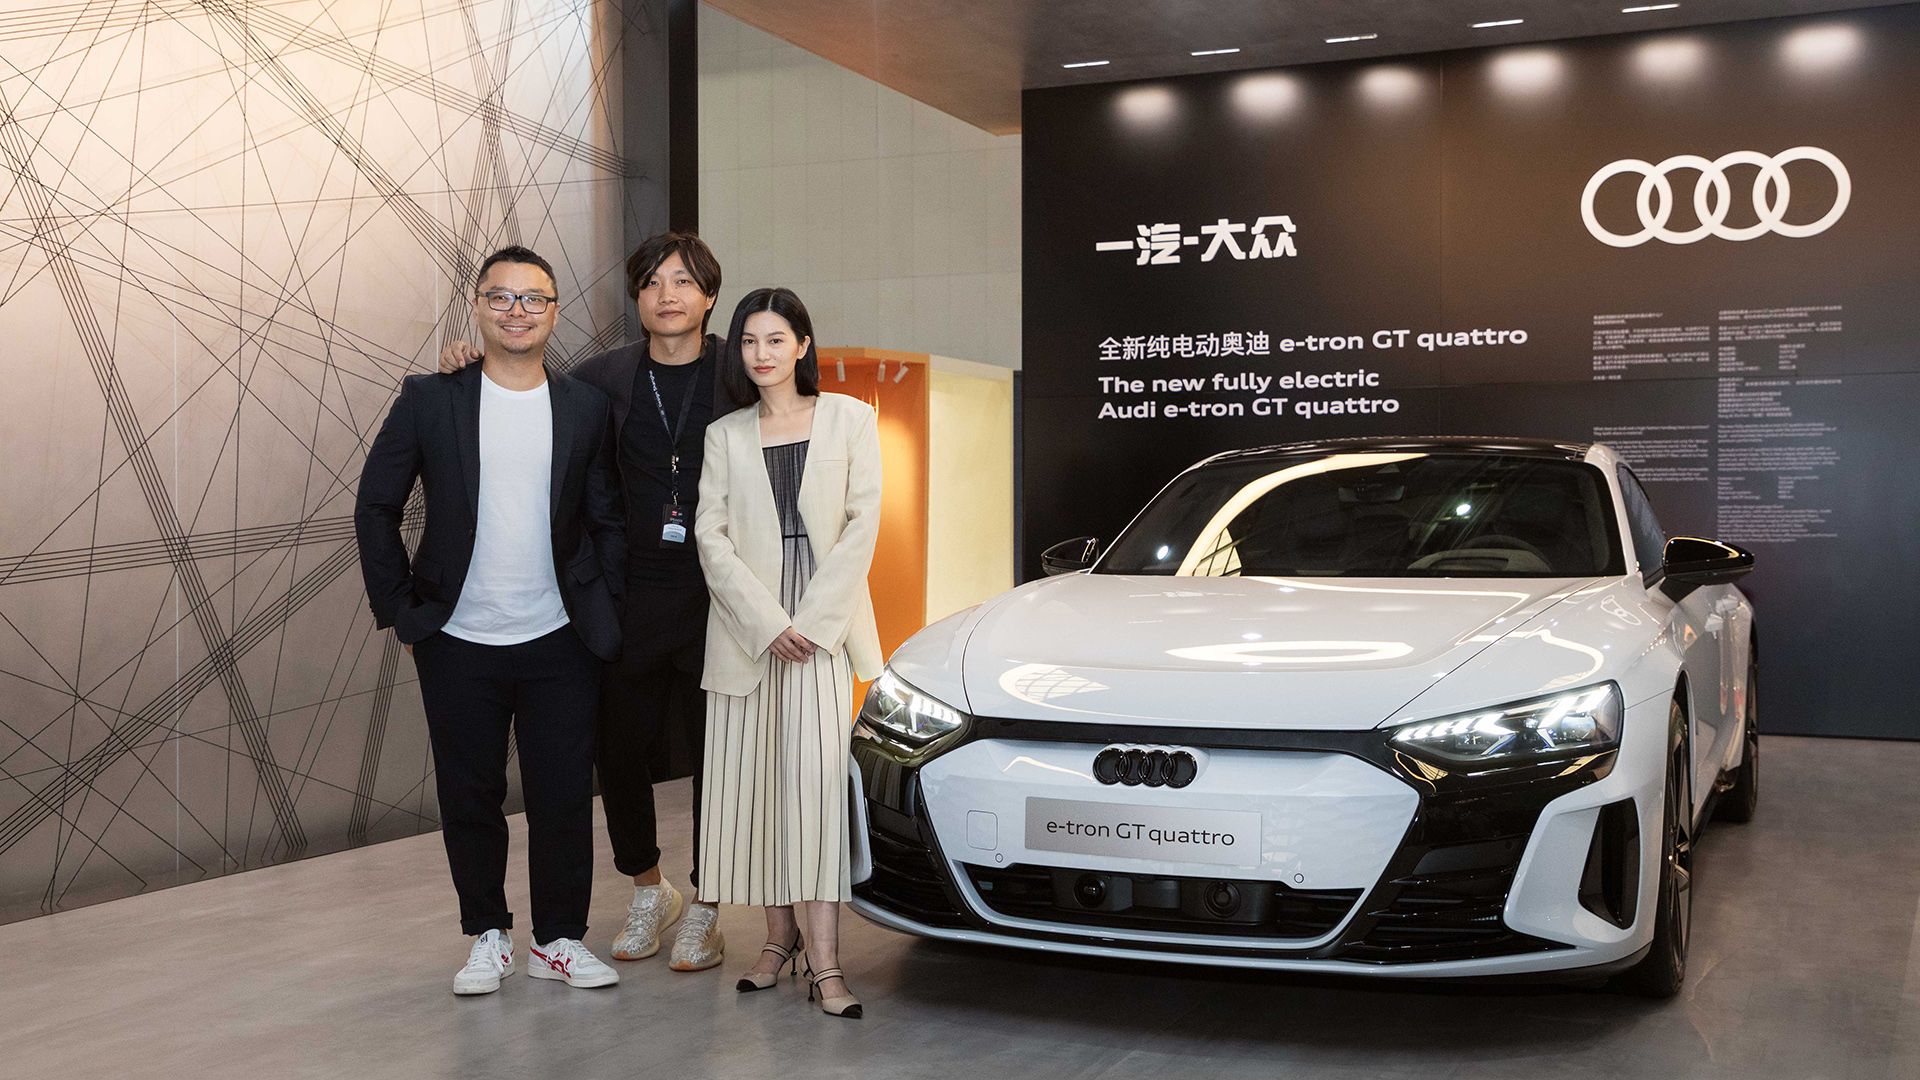 Yu (Scott) Zhao, responsabile Audi Innovation Research presso Audi China, e Yunzhou Wu, Senior Interior Designer e coordinatore Interior Design, con l’influencer Licheng Ling presso l'Audi e-tron GT quattro